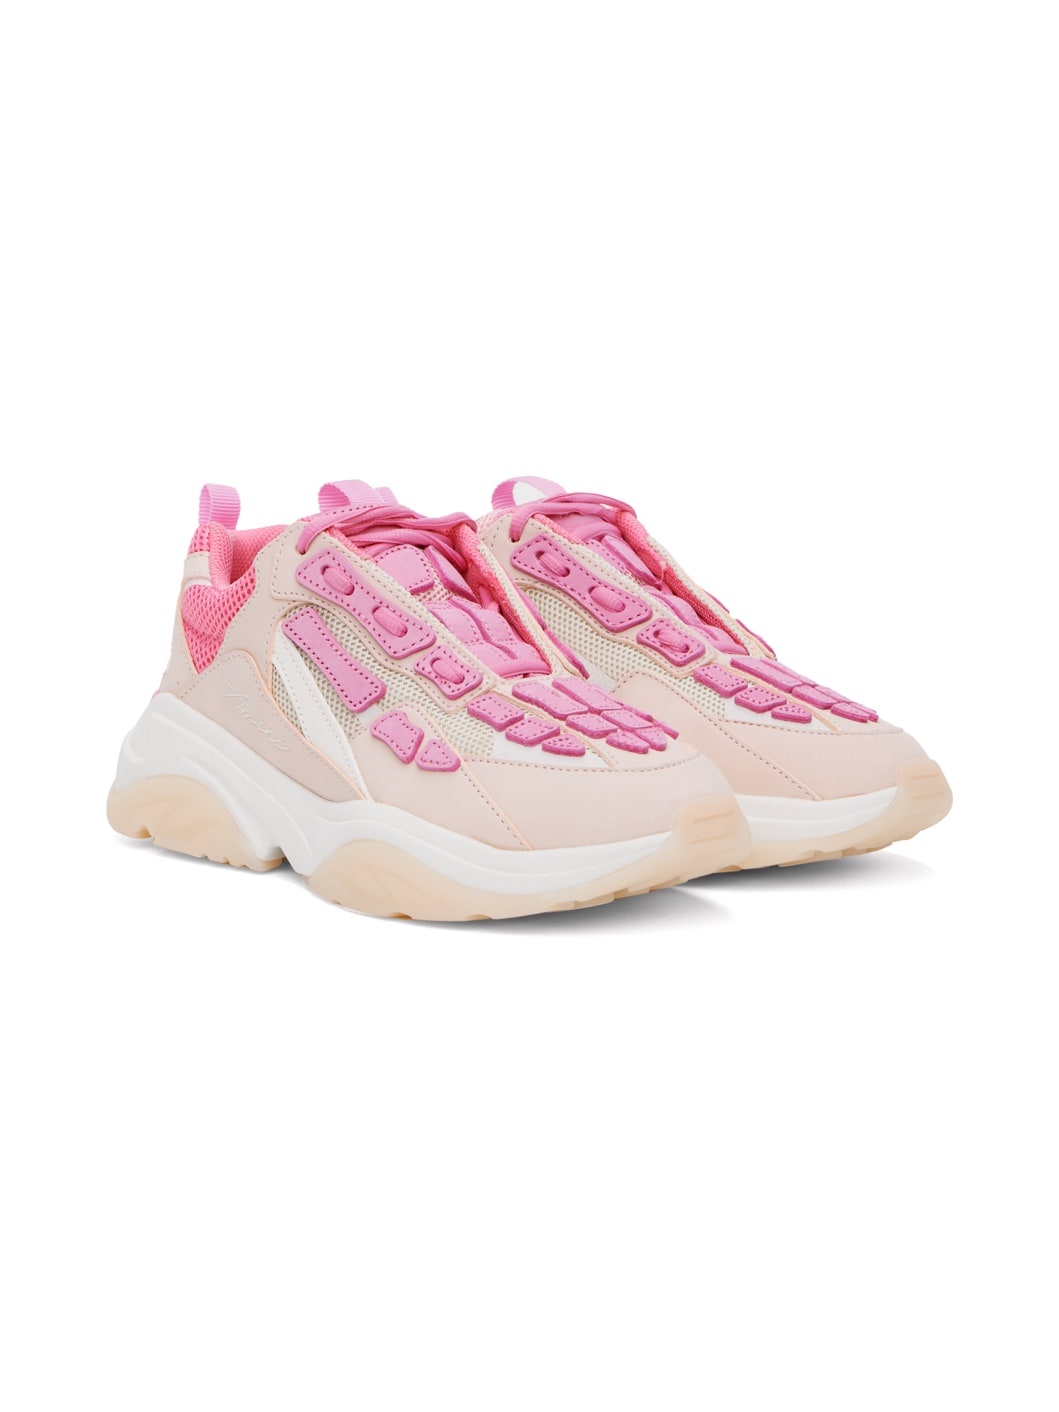 Pink Bone Runner Sneakers - 4